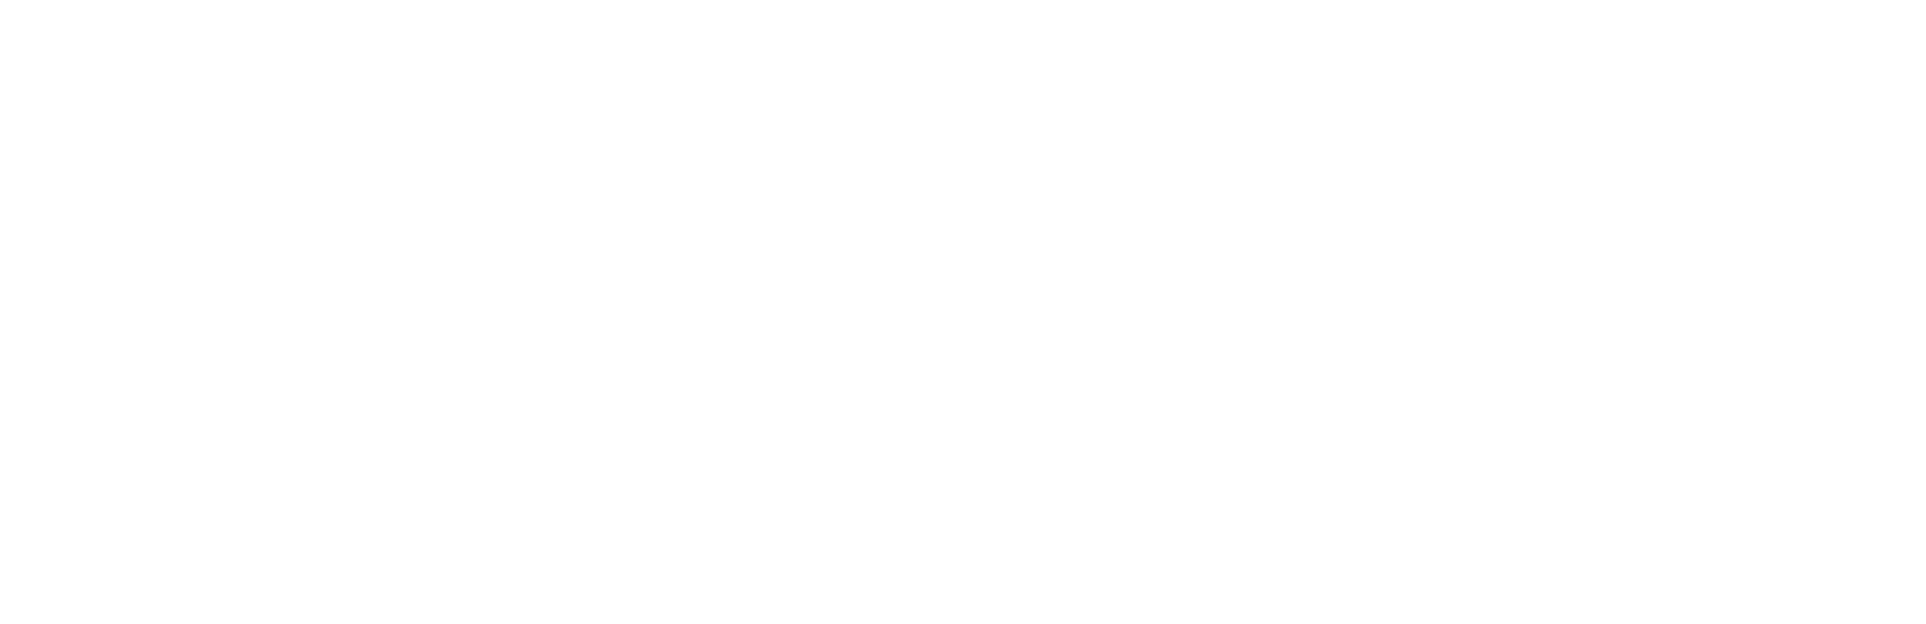 Plume-logo-white